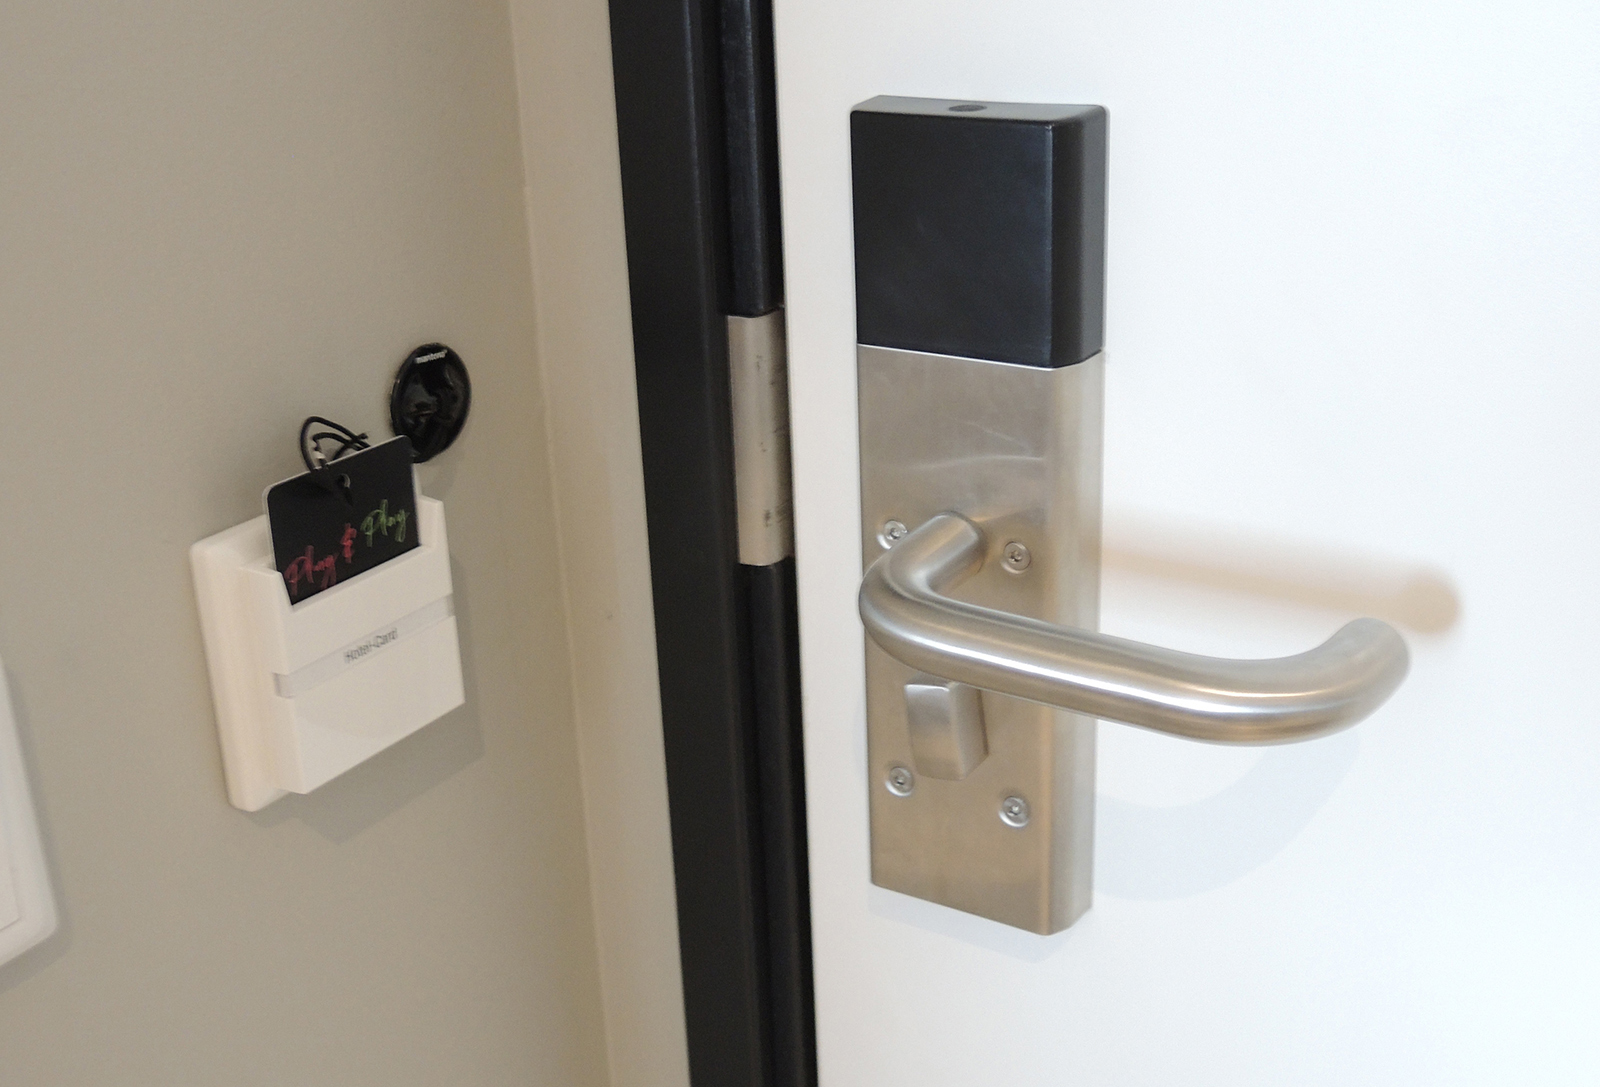 Binnenzijde kamerdeur waarbij de gepersonaliseerde keycard ook dient voor geprogrammeerde diensten in deze kamer of ruimte.